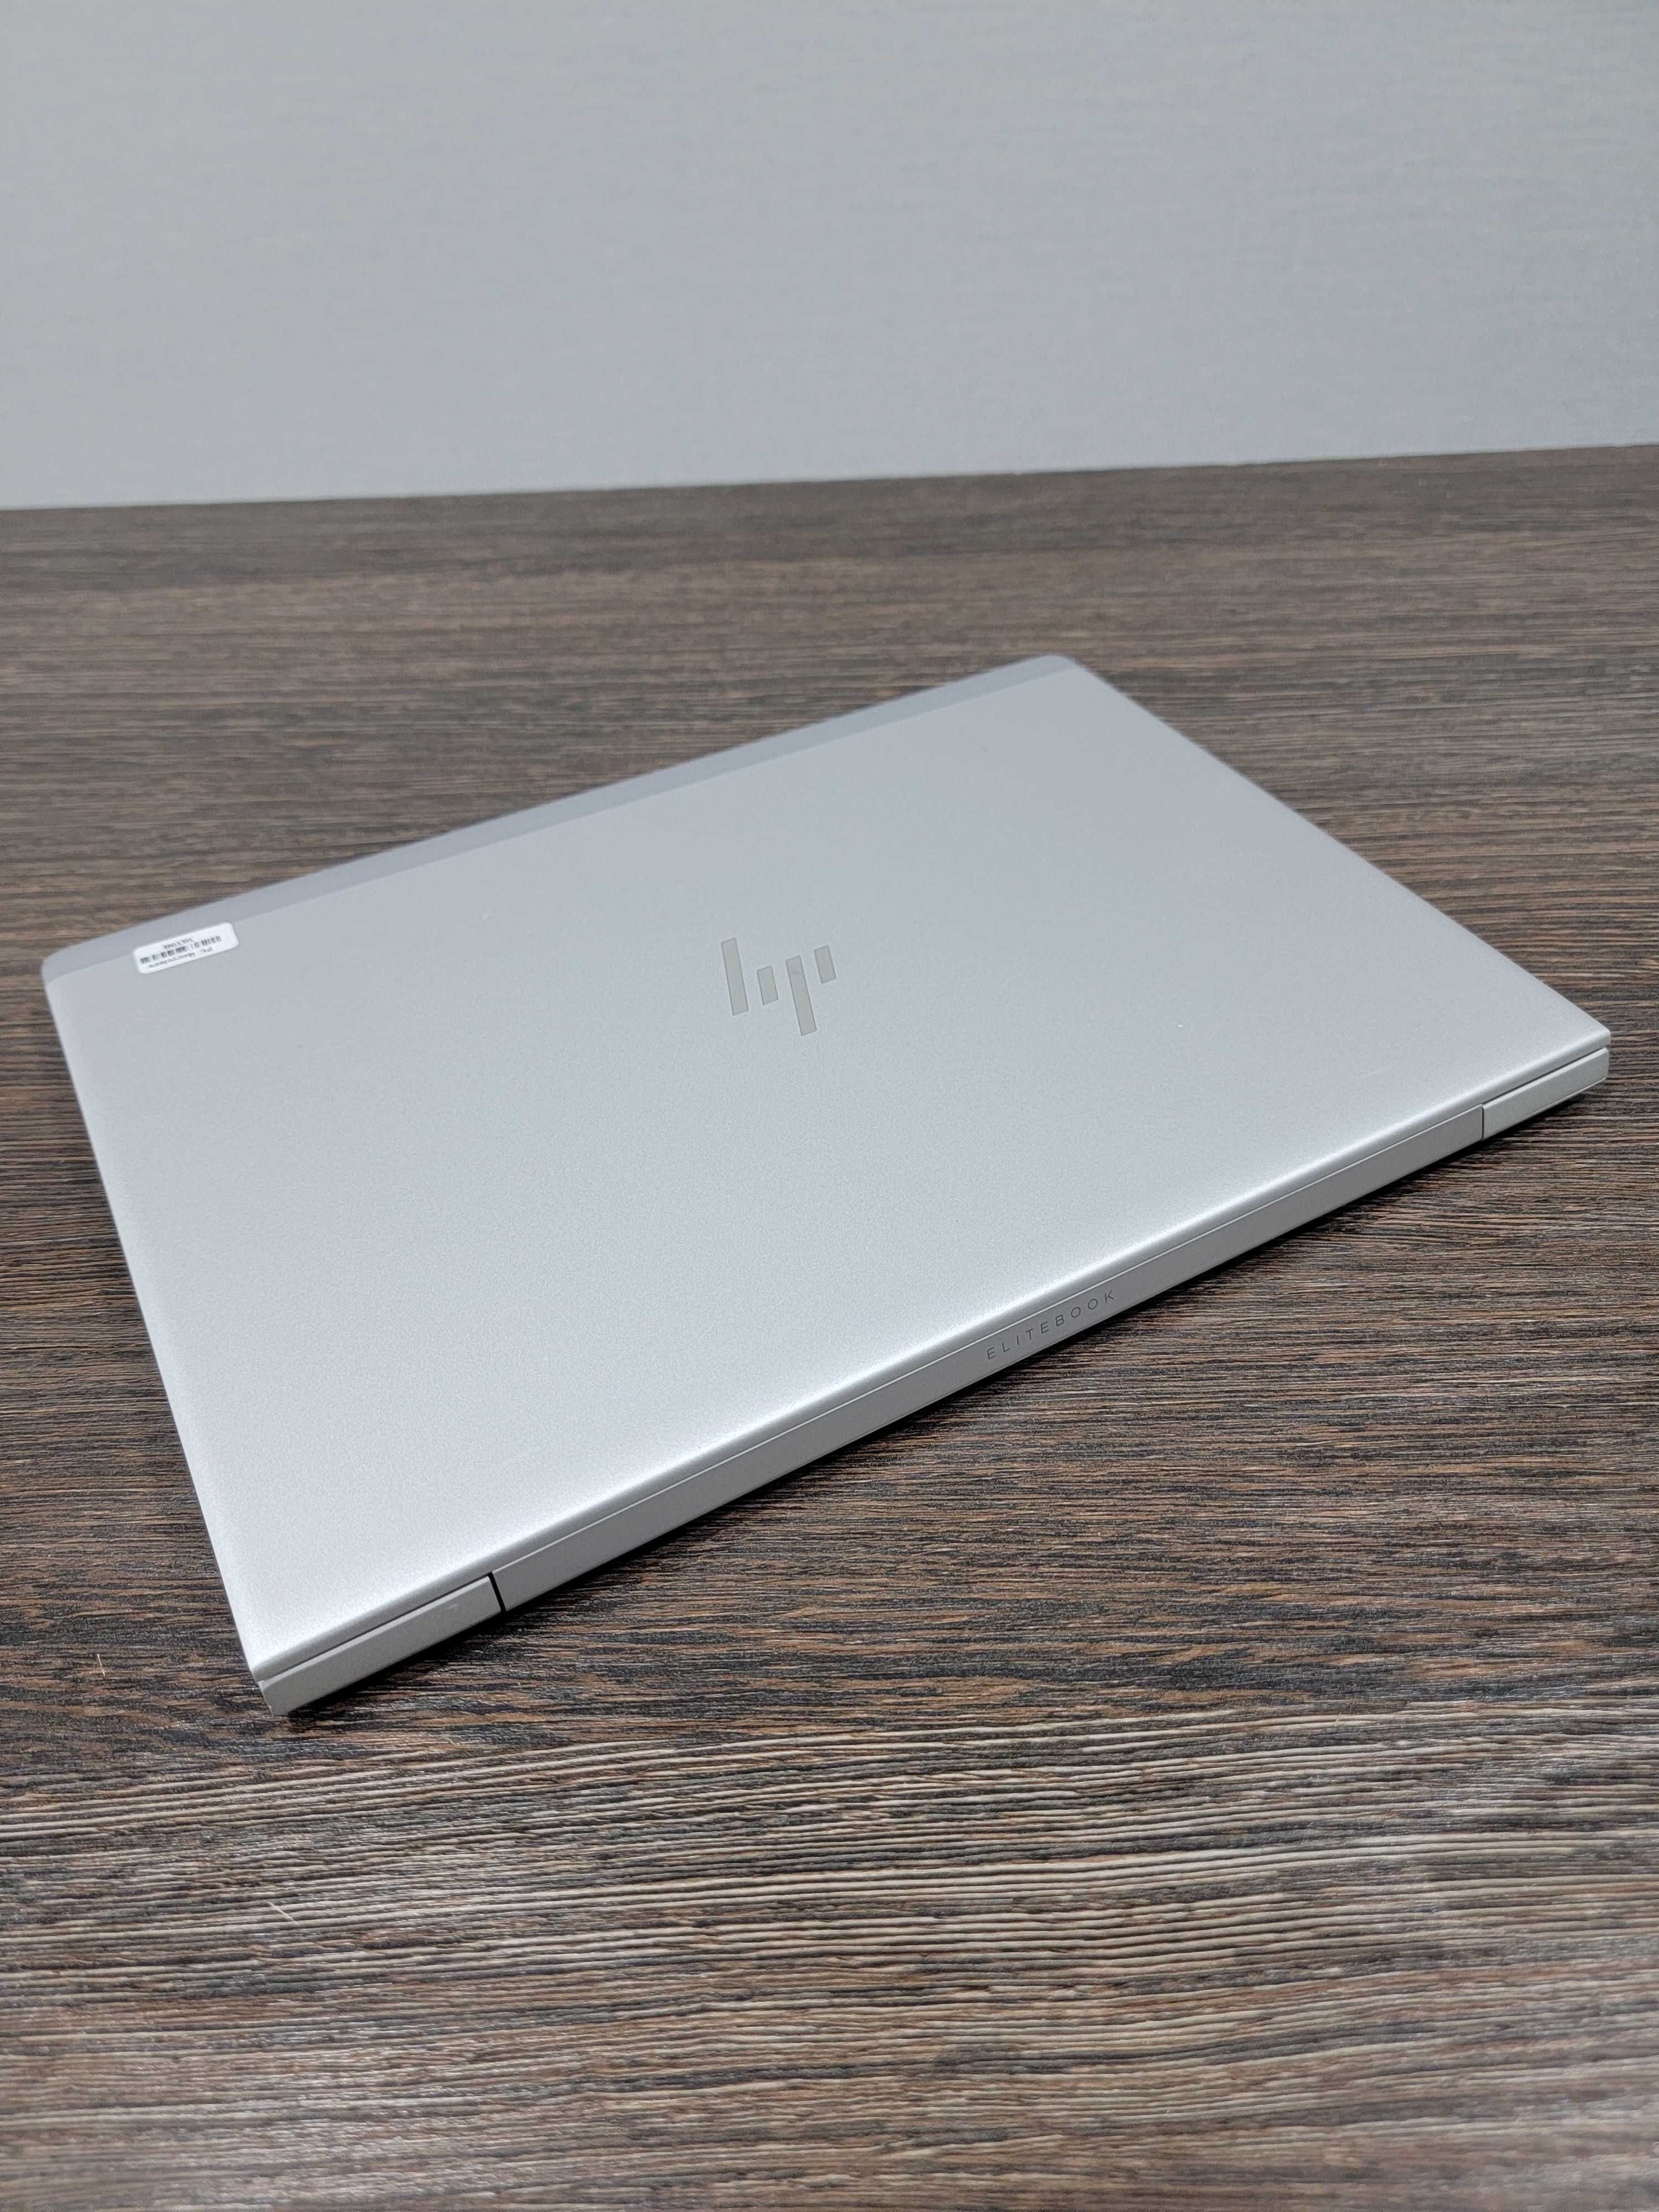 мощный ультонкий ноутбук Hp EliteBook 745 G6, подсветка клавиатуры,